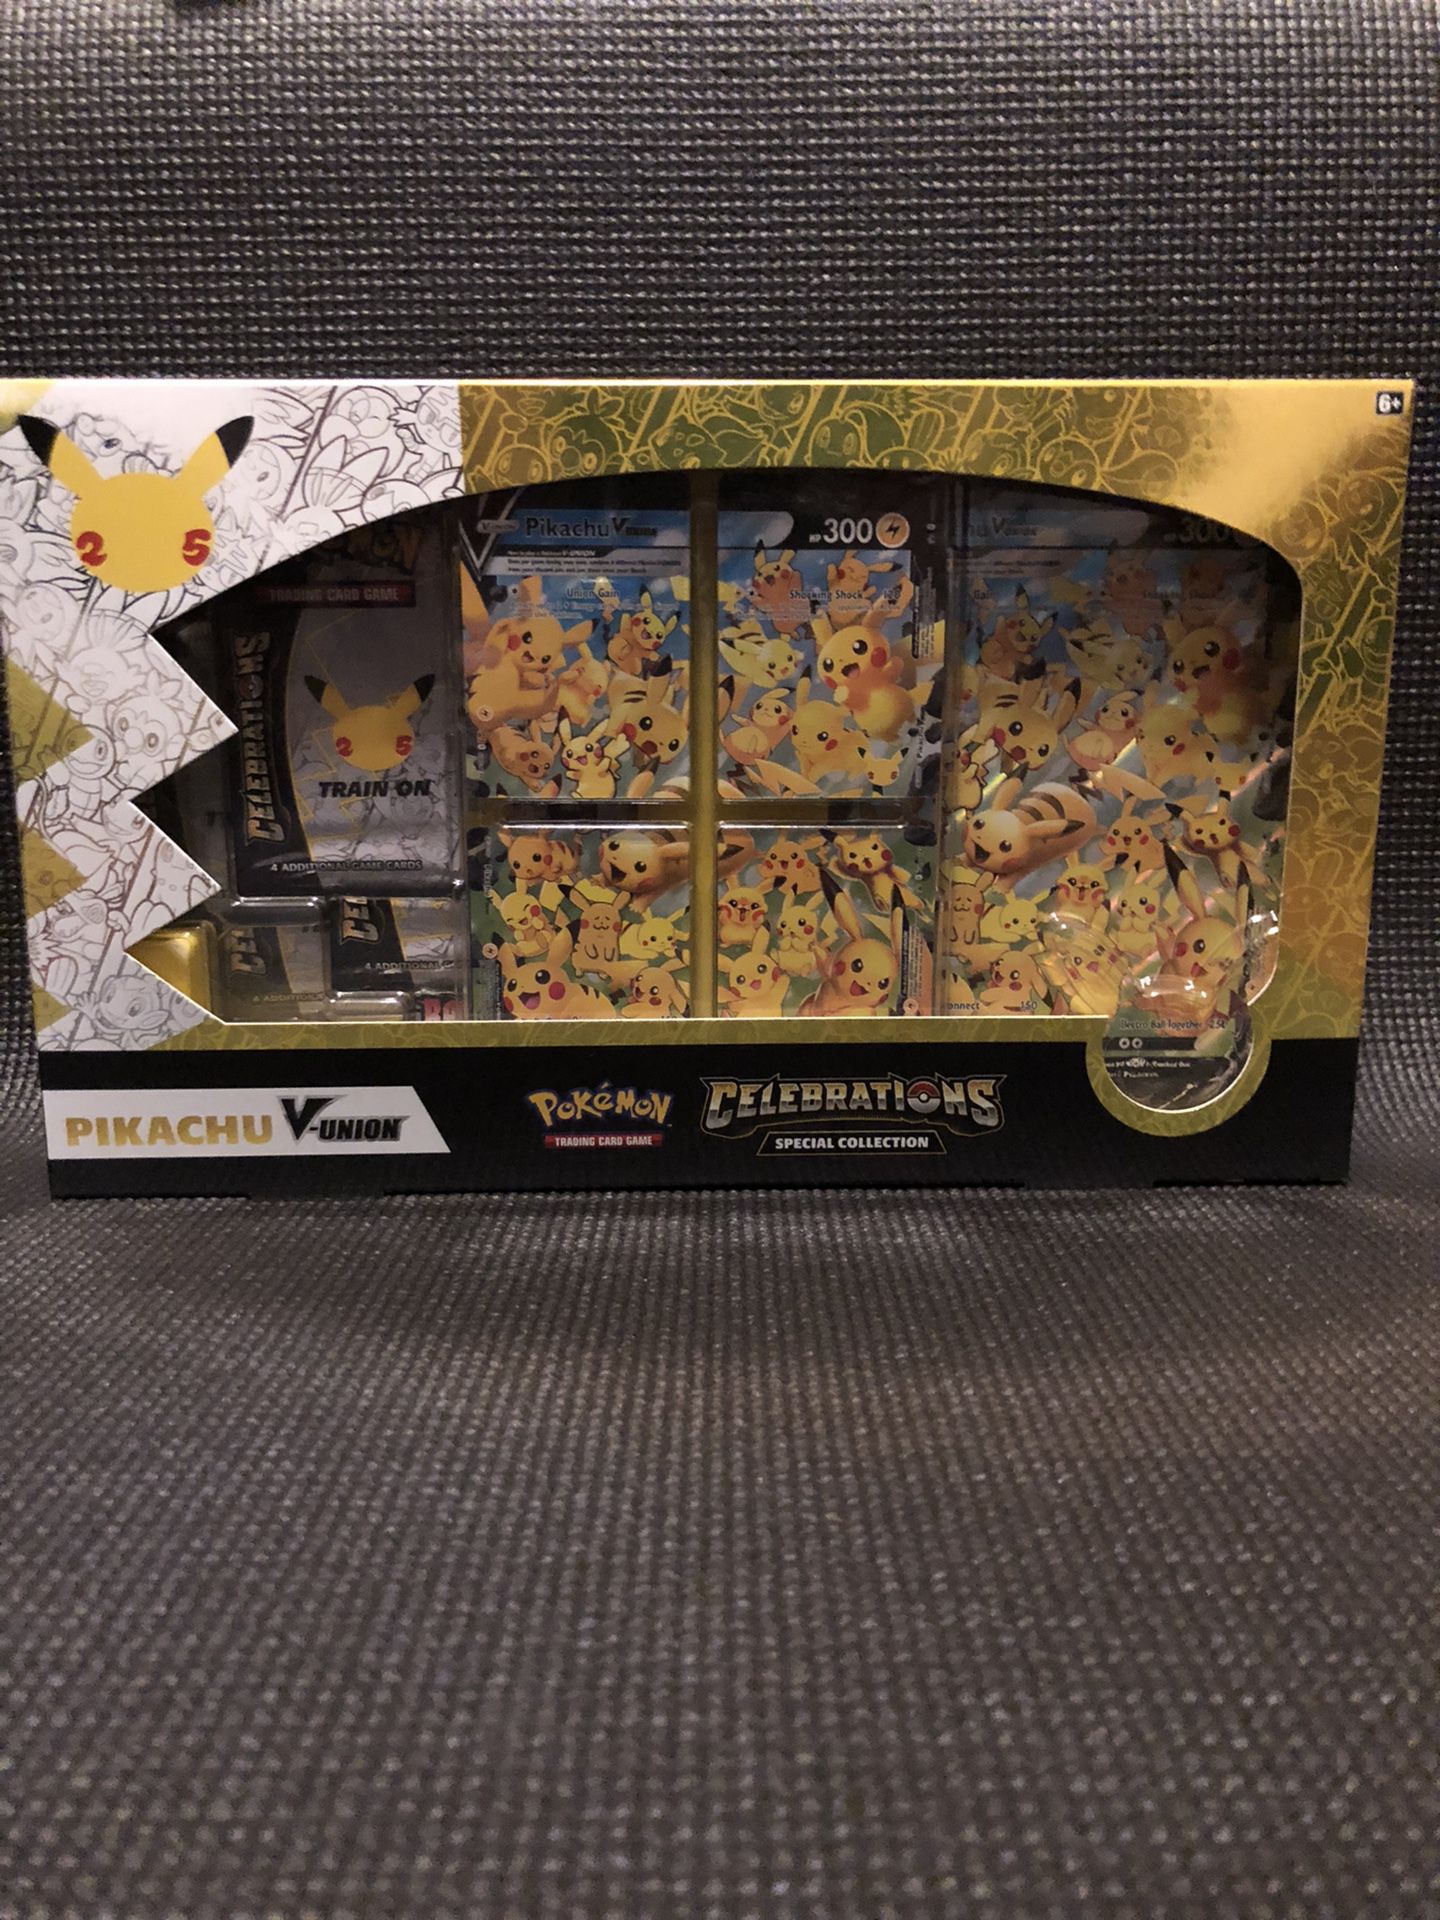 Pokémon Celebrations Pikachu V- Union Special Collection Box 